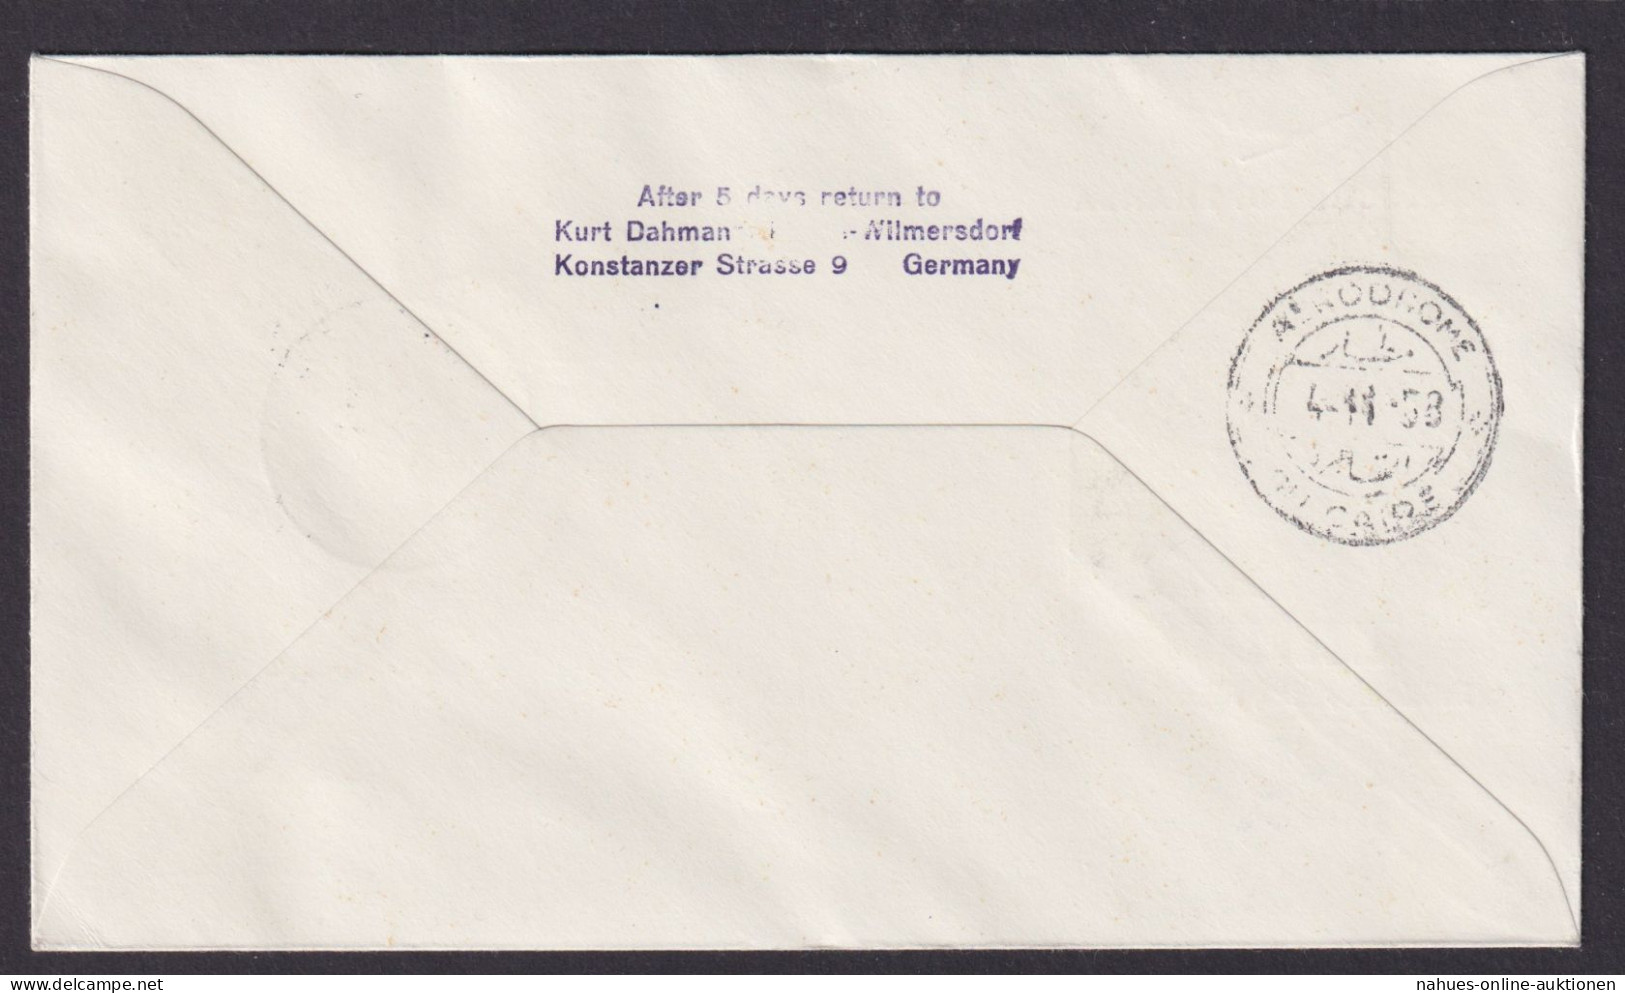 Flugpost Brief Air Mail Lufthansa LH 604 Frankfurt München Kairo Ägypten - Storia Postale